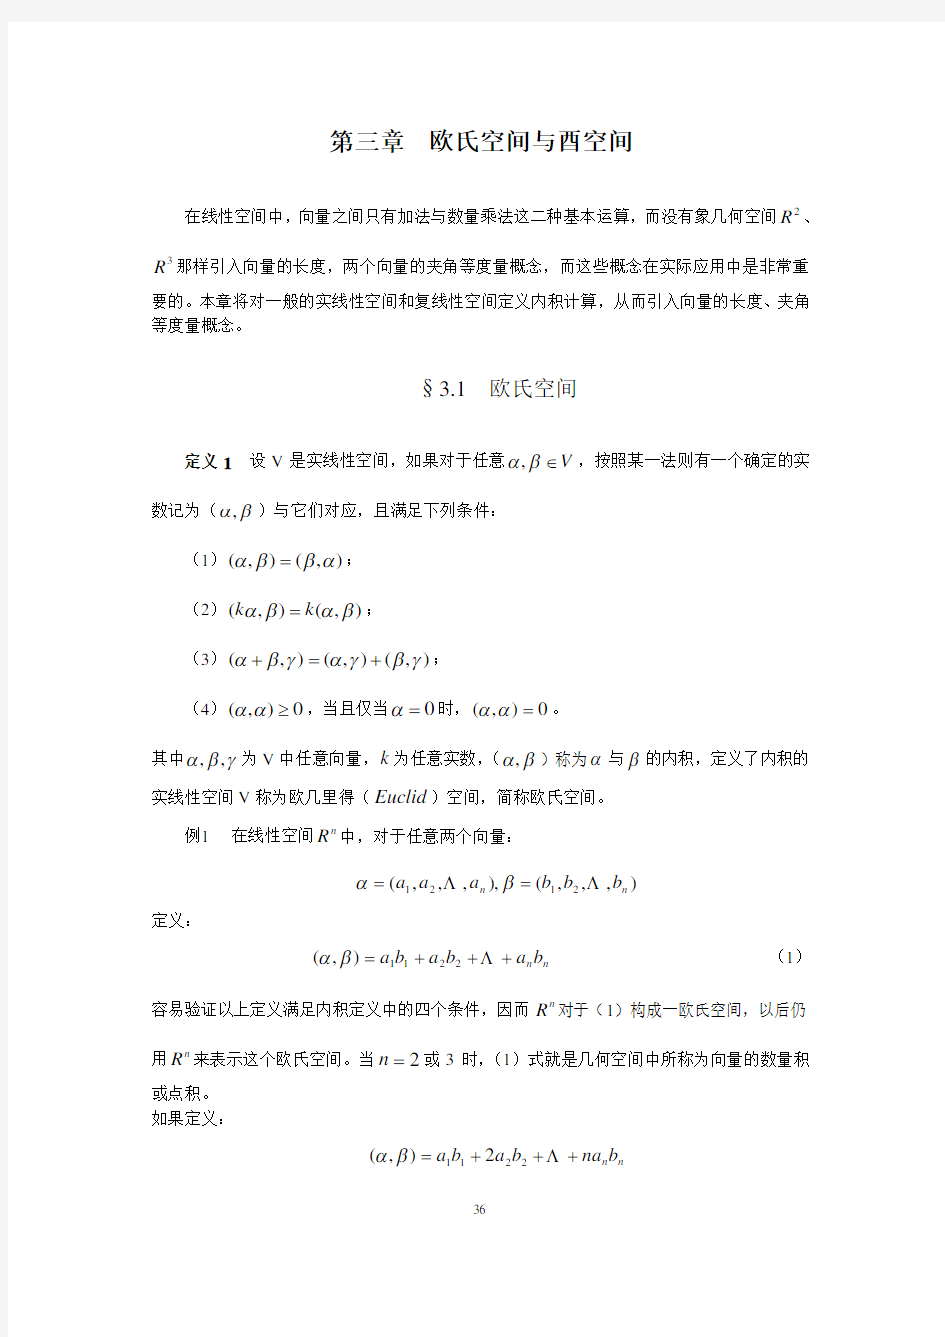 南京工业大学矩阵论第三章讲义 ch3